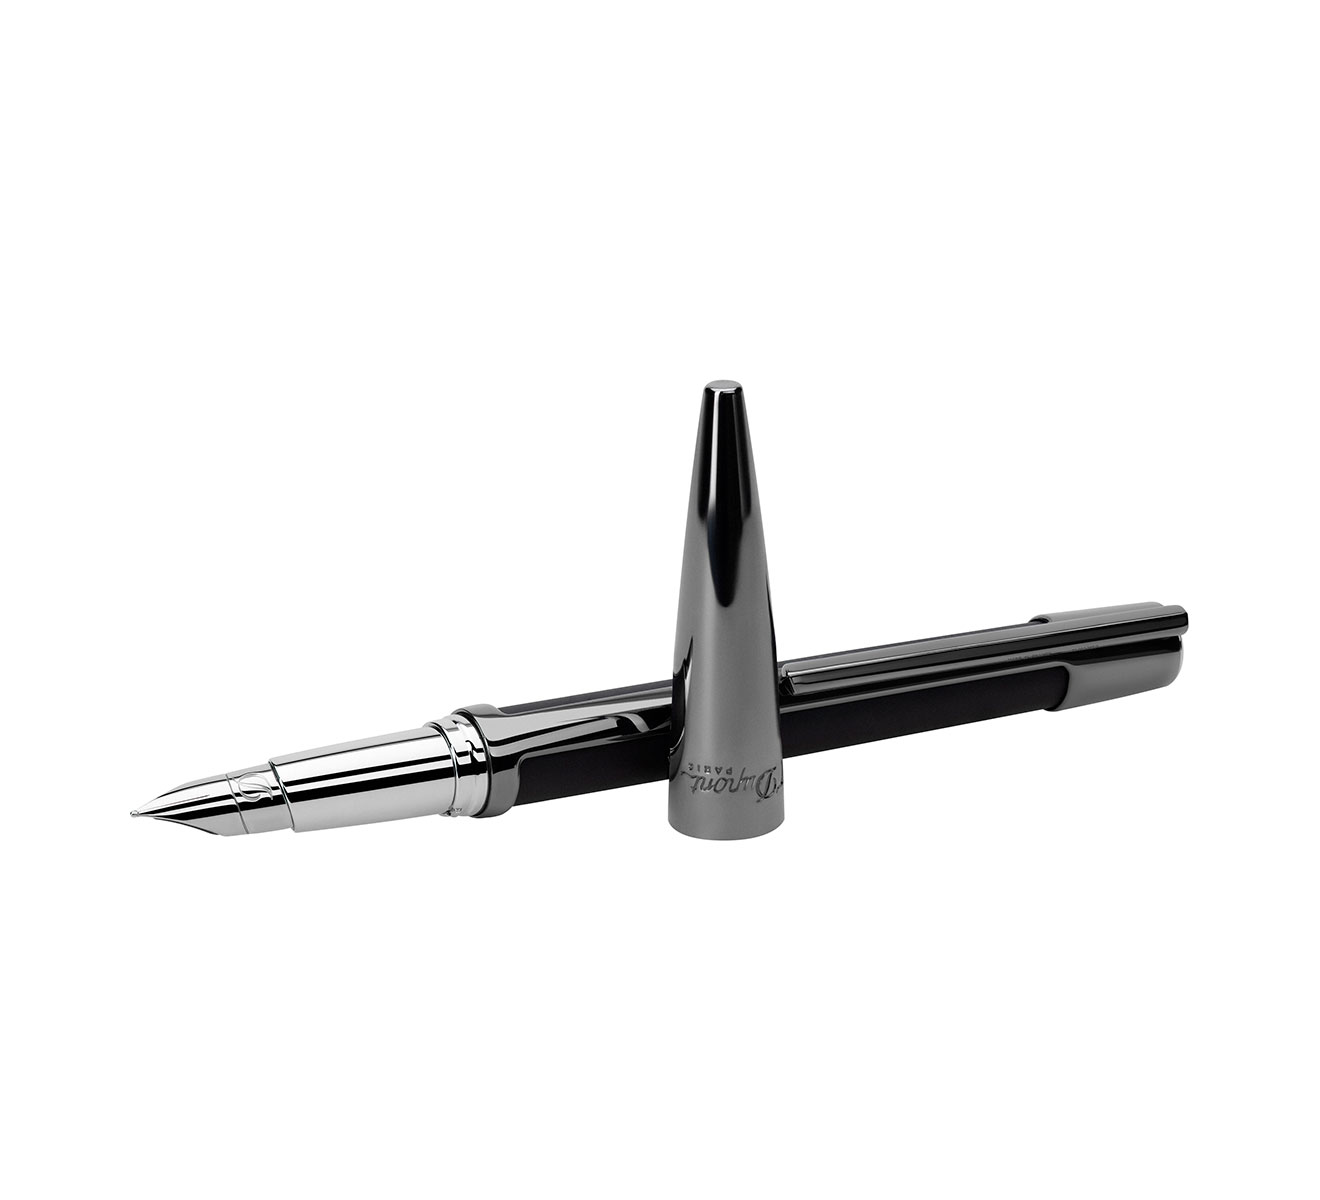 Ручка перьевая S.T. Dupont Défi 400707 - фото 2 – Mercury